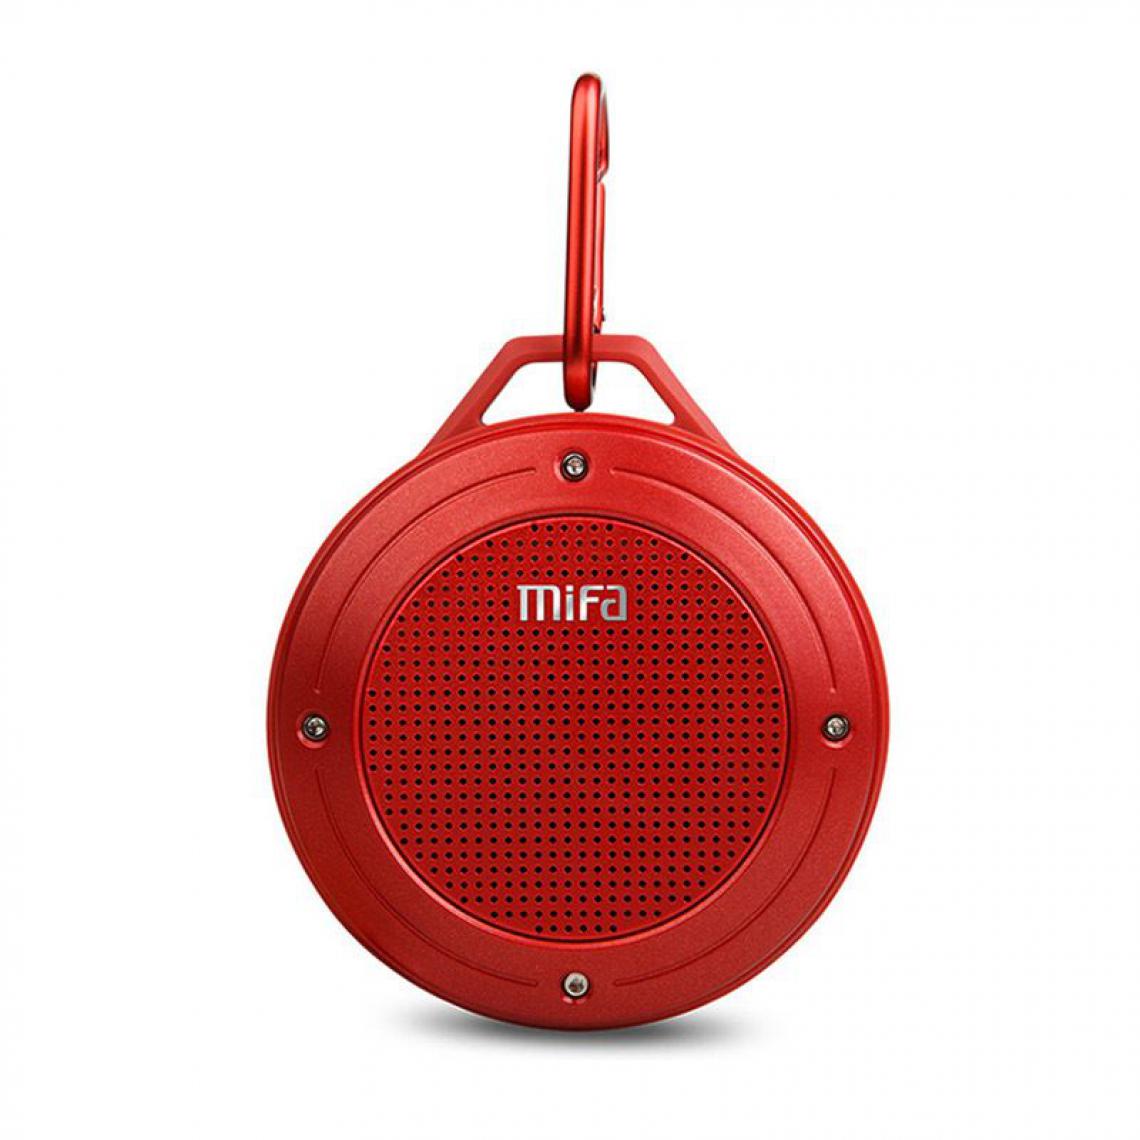 Generic - Enceinte Portable MIFA F10 ,   sans fil Bluetooth 5.0  ,IPX6  étanche avec micro intégré ,stéréo et  basse Surround , Compatibles avec Android, iPhone et Ordinateurs Portable  8.6 * 9.7 * 3.8 cm - Rouge  - Hauts-parleurs